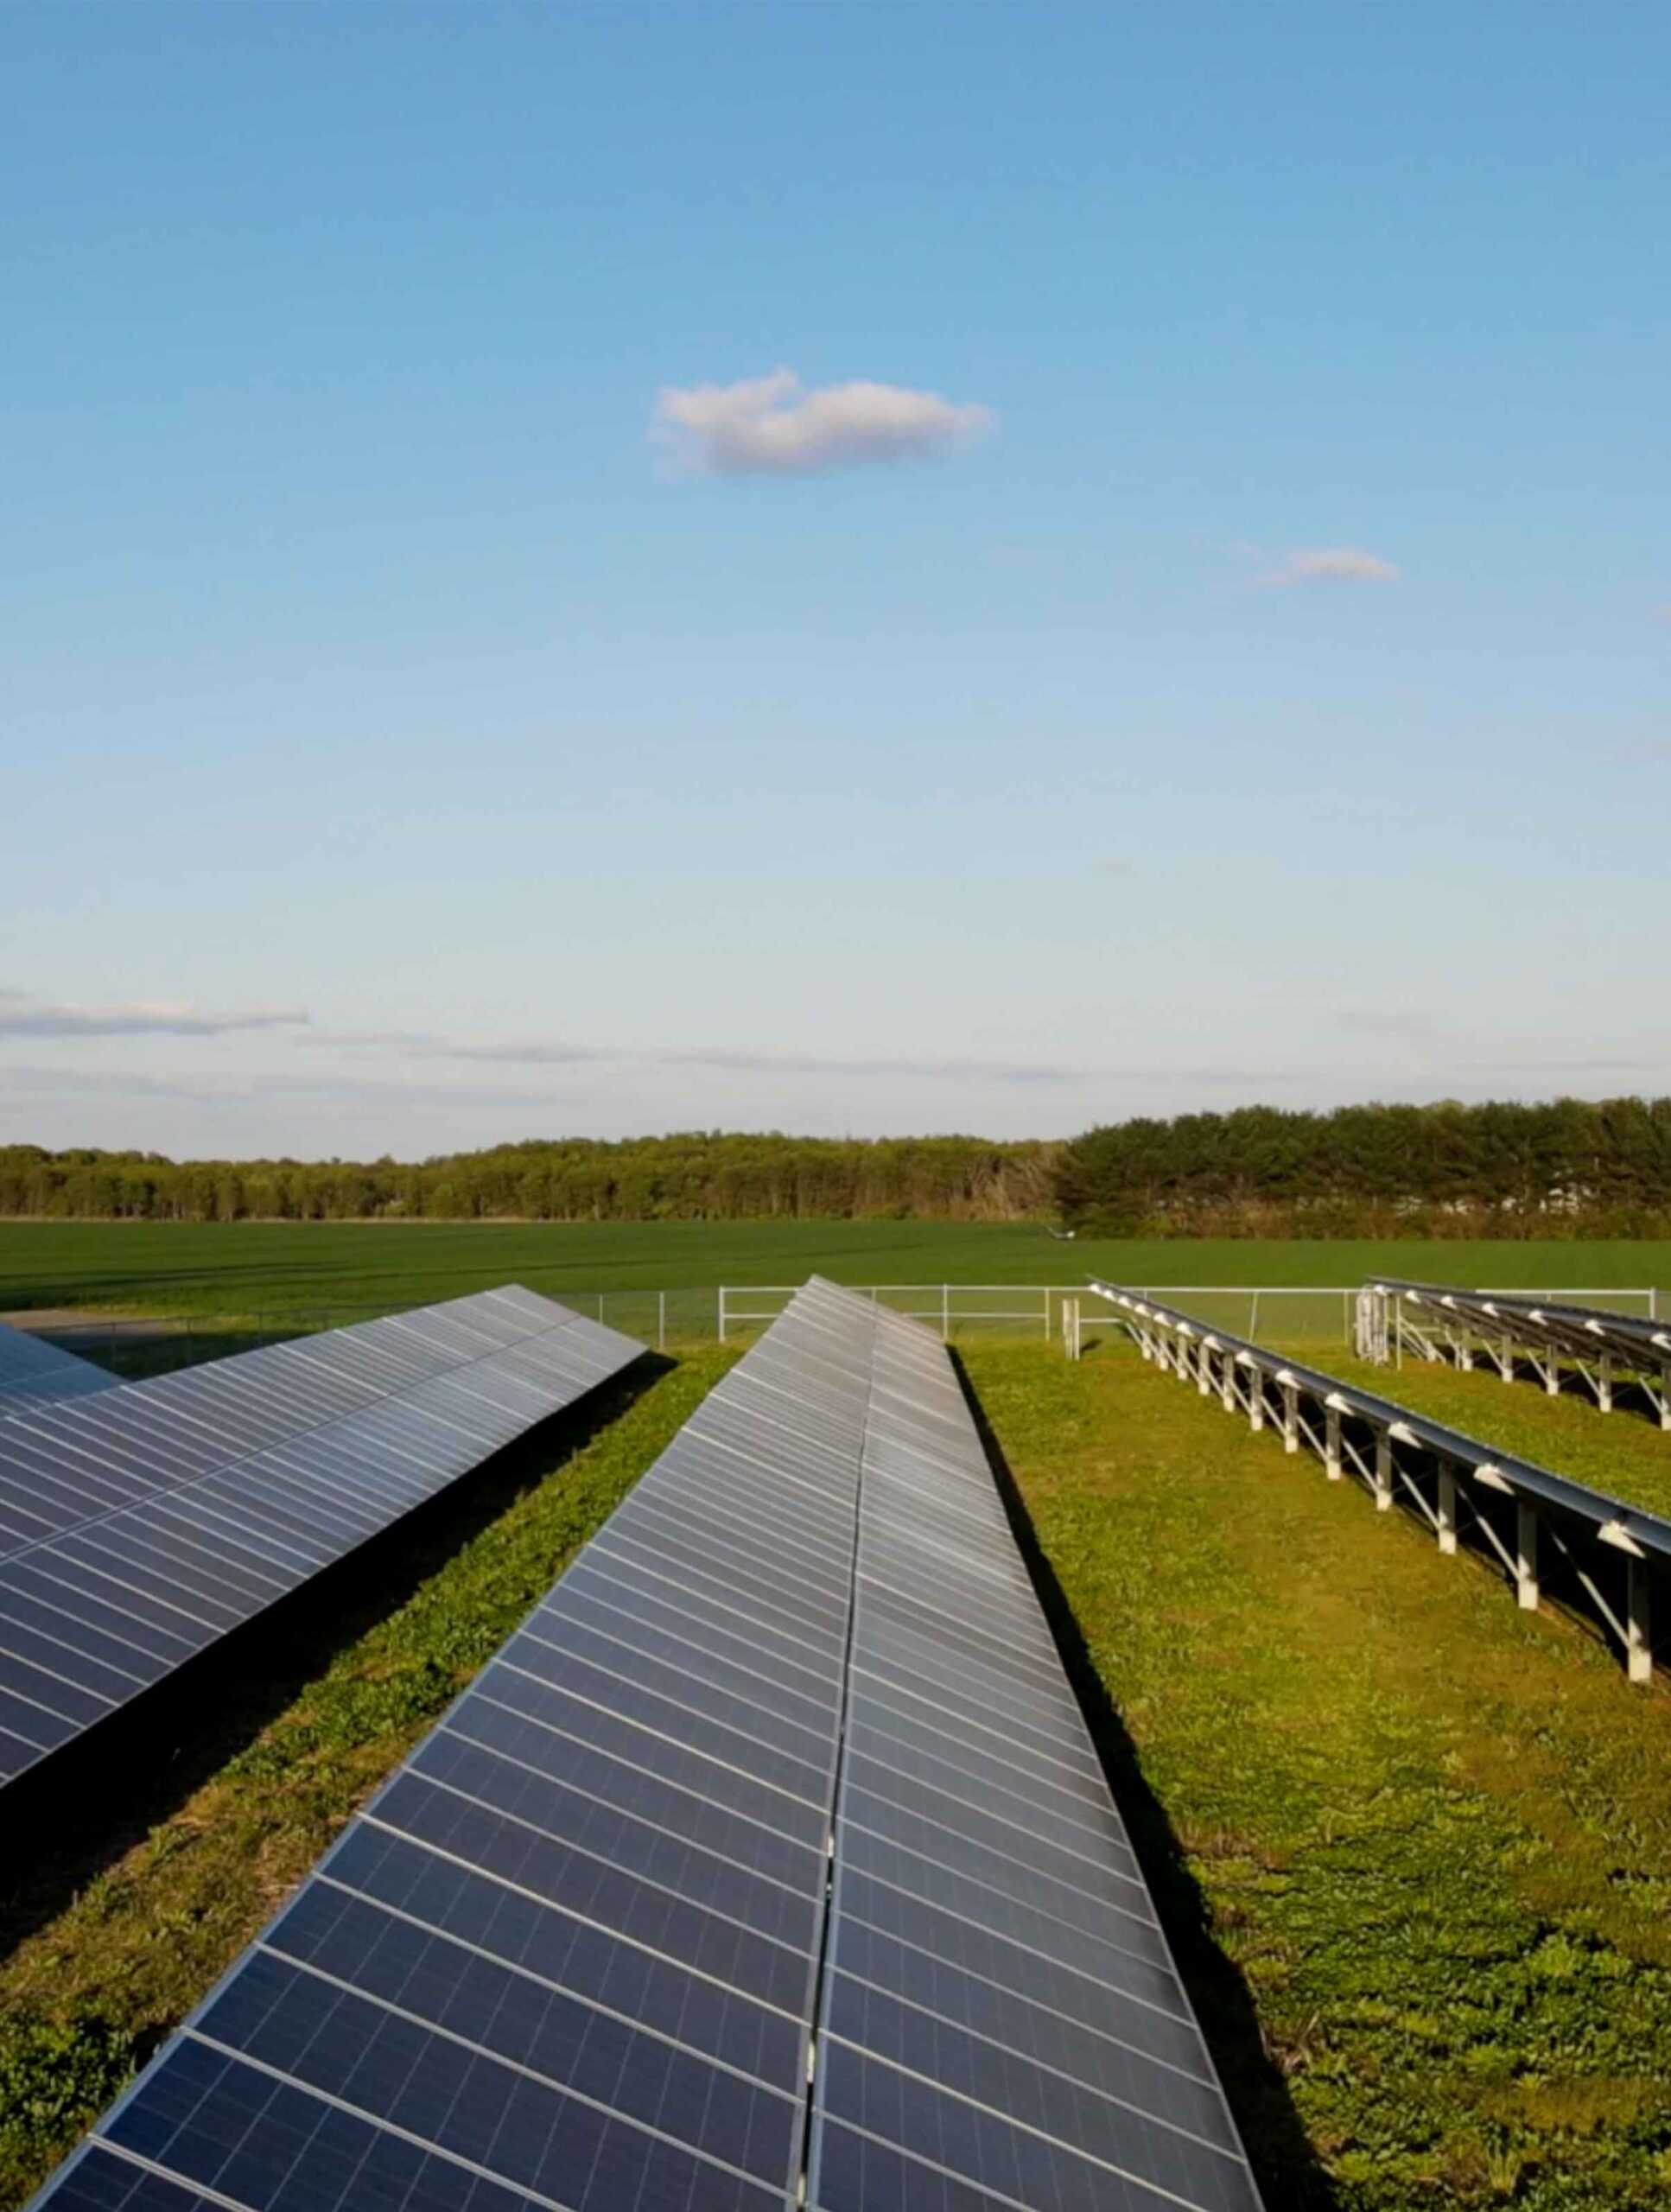 Solar panels in a green field.